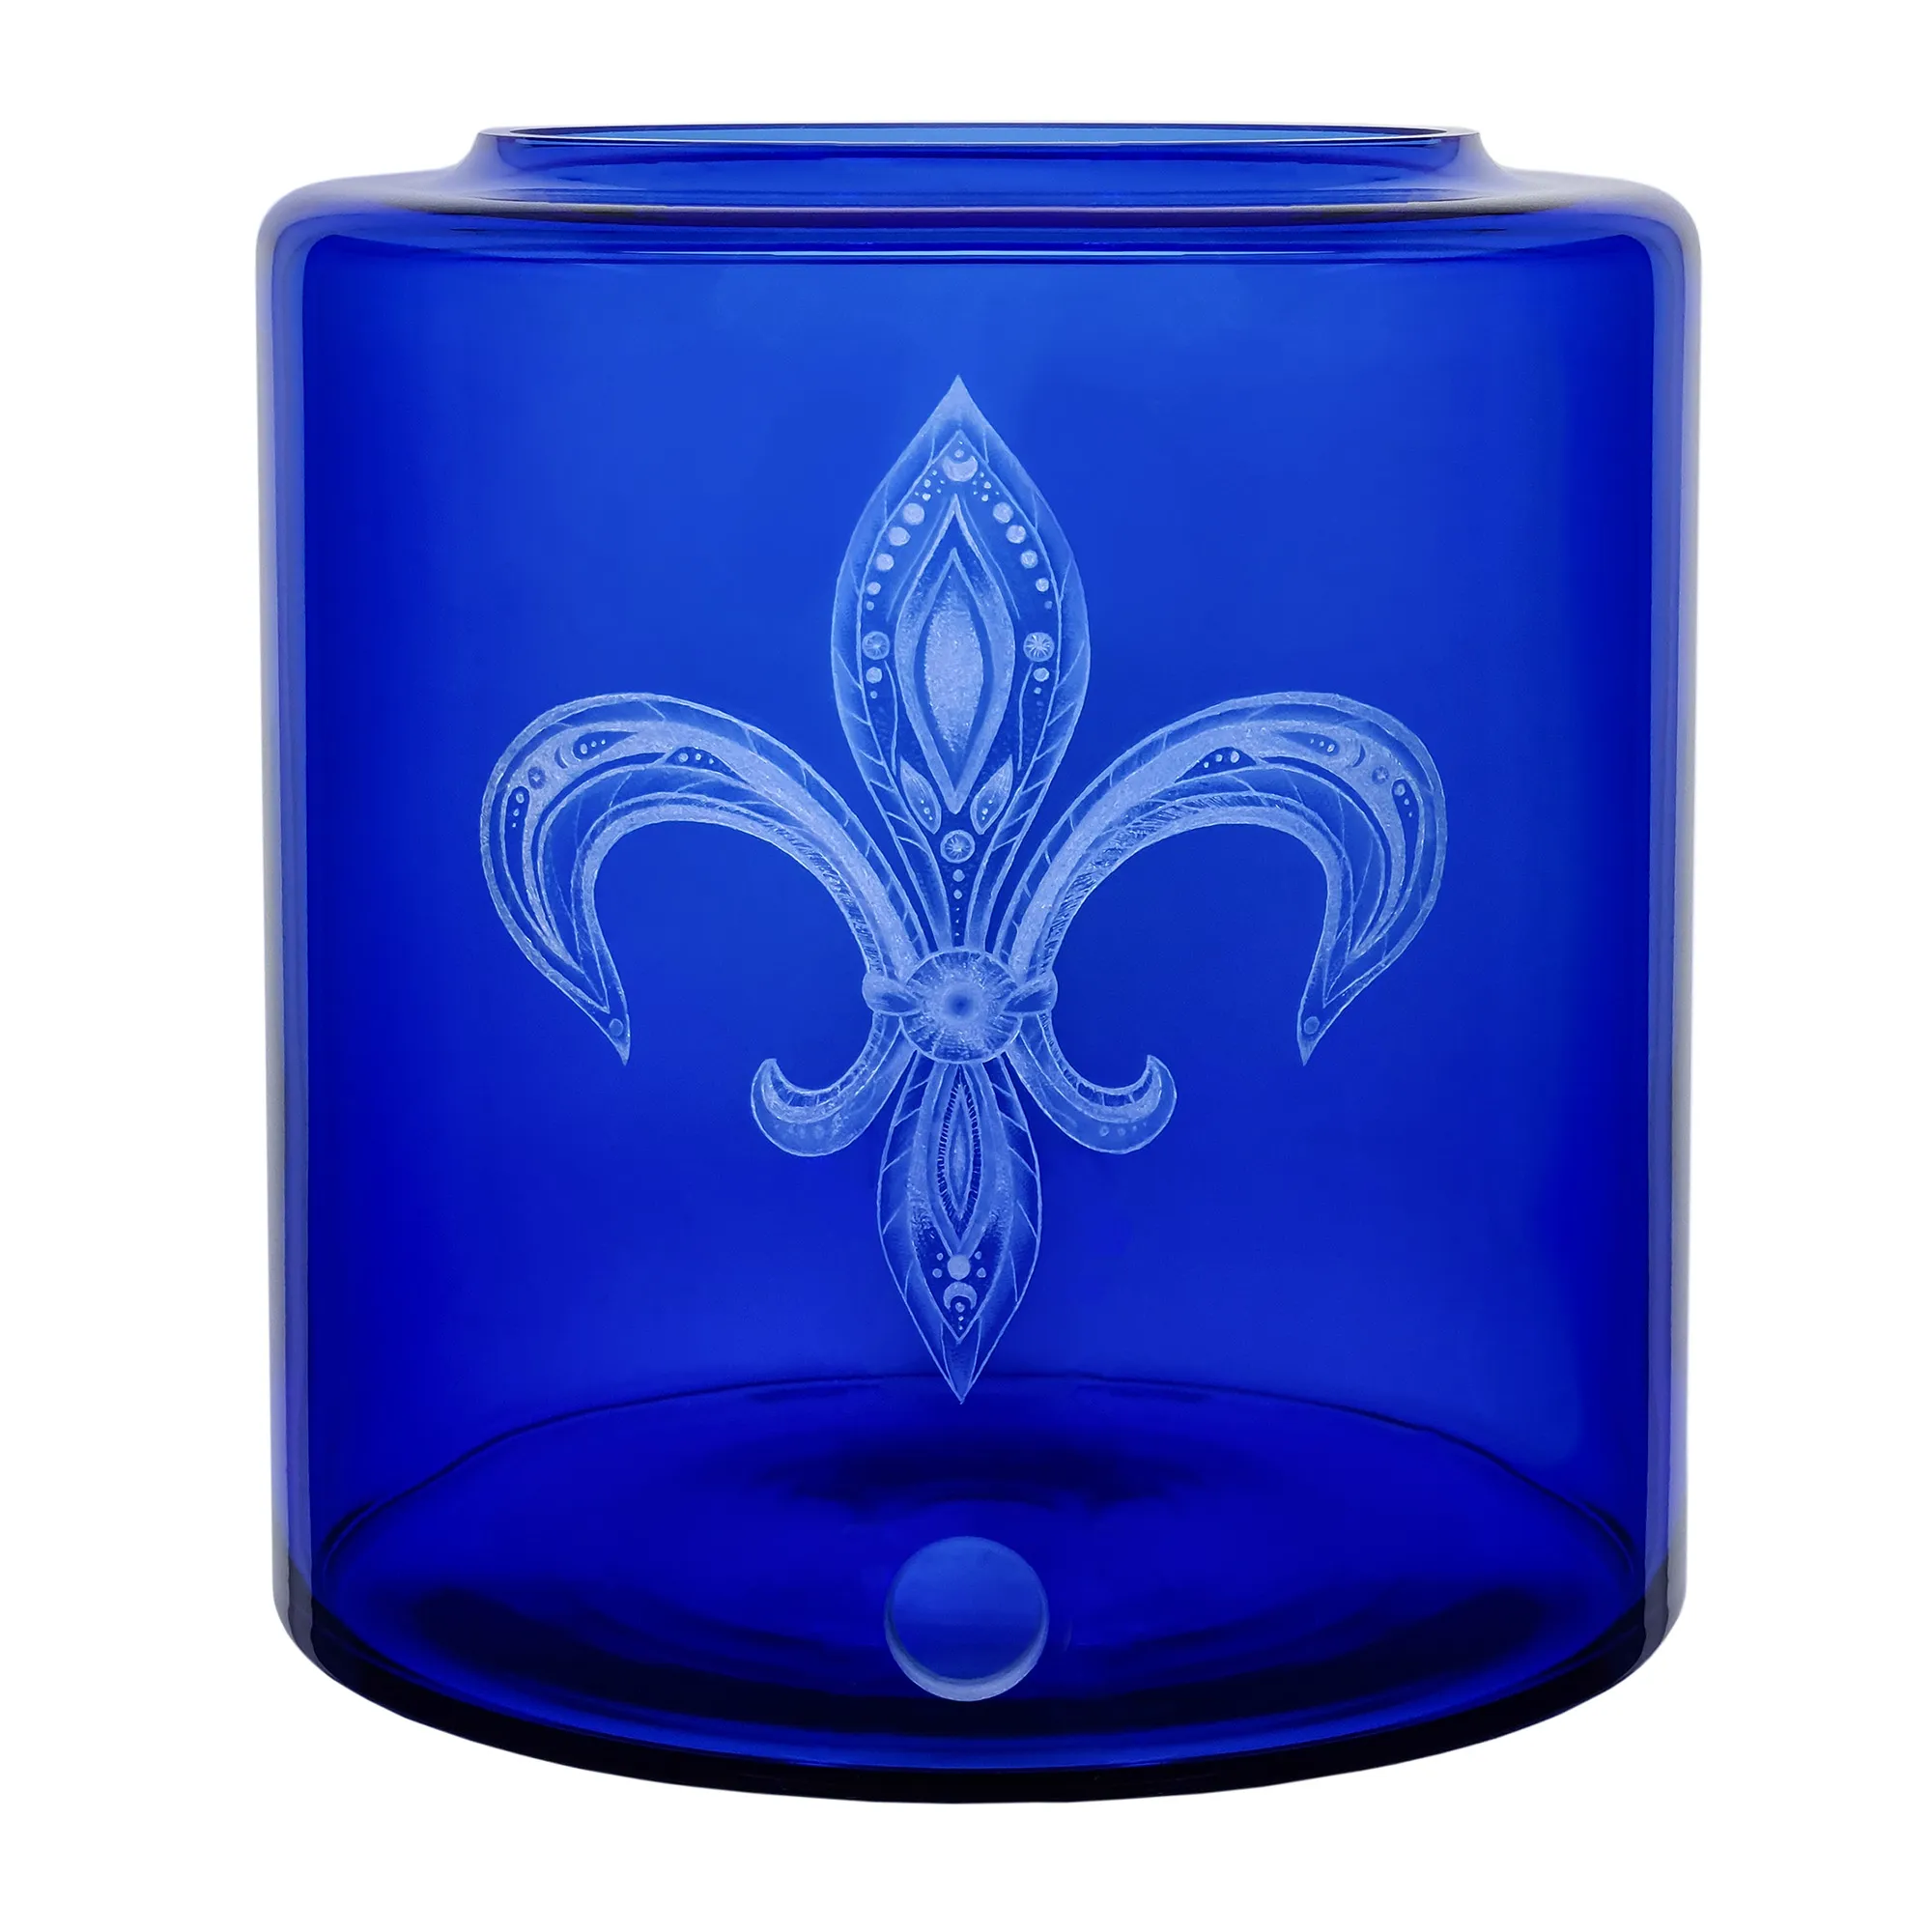 Vorratstank für einen Acala Wasserfilter Mini mit einer Handgravur. Die Gravur zeigt, auf blauem Glas, eine Lilie in der filigrane Muster sind.